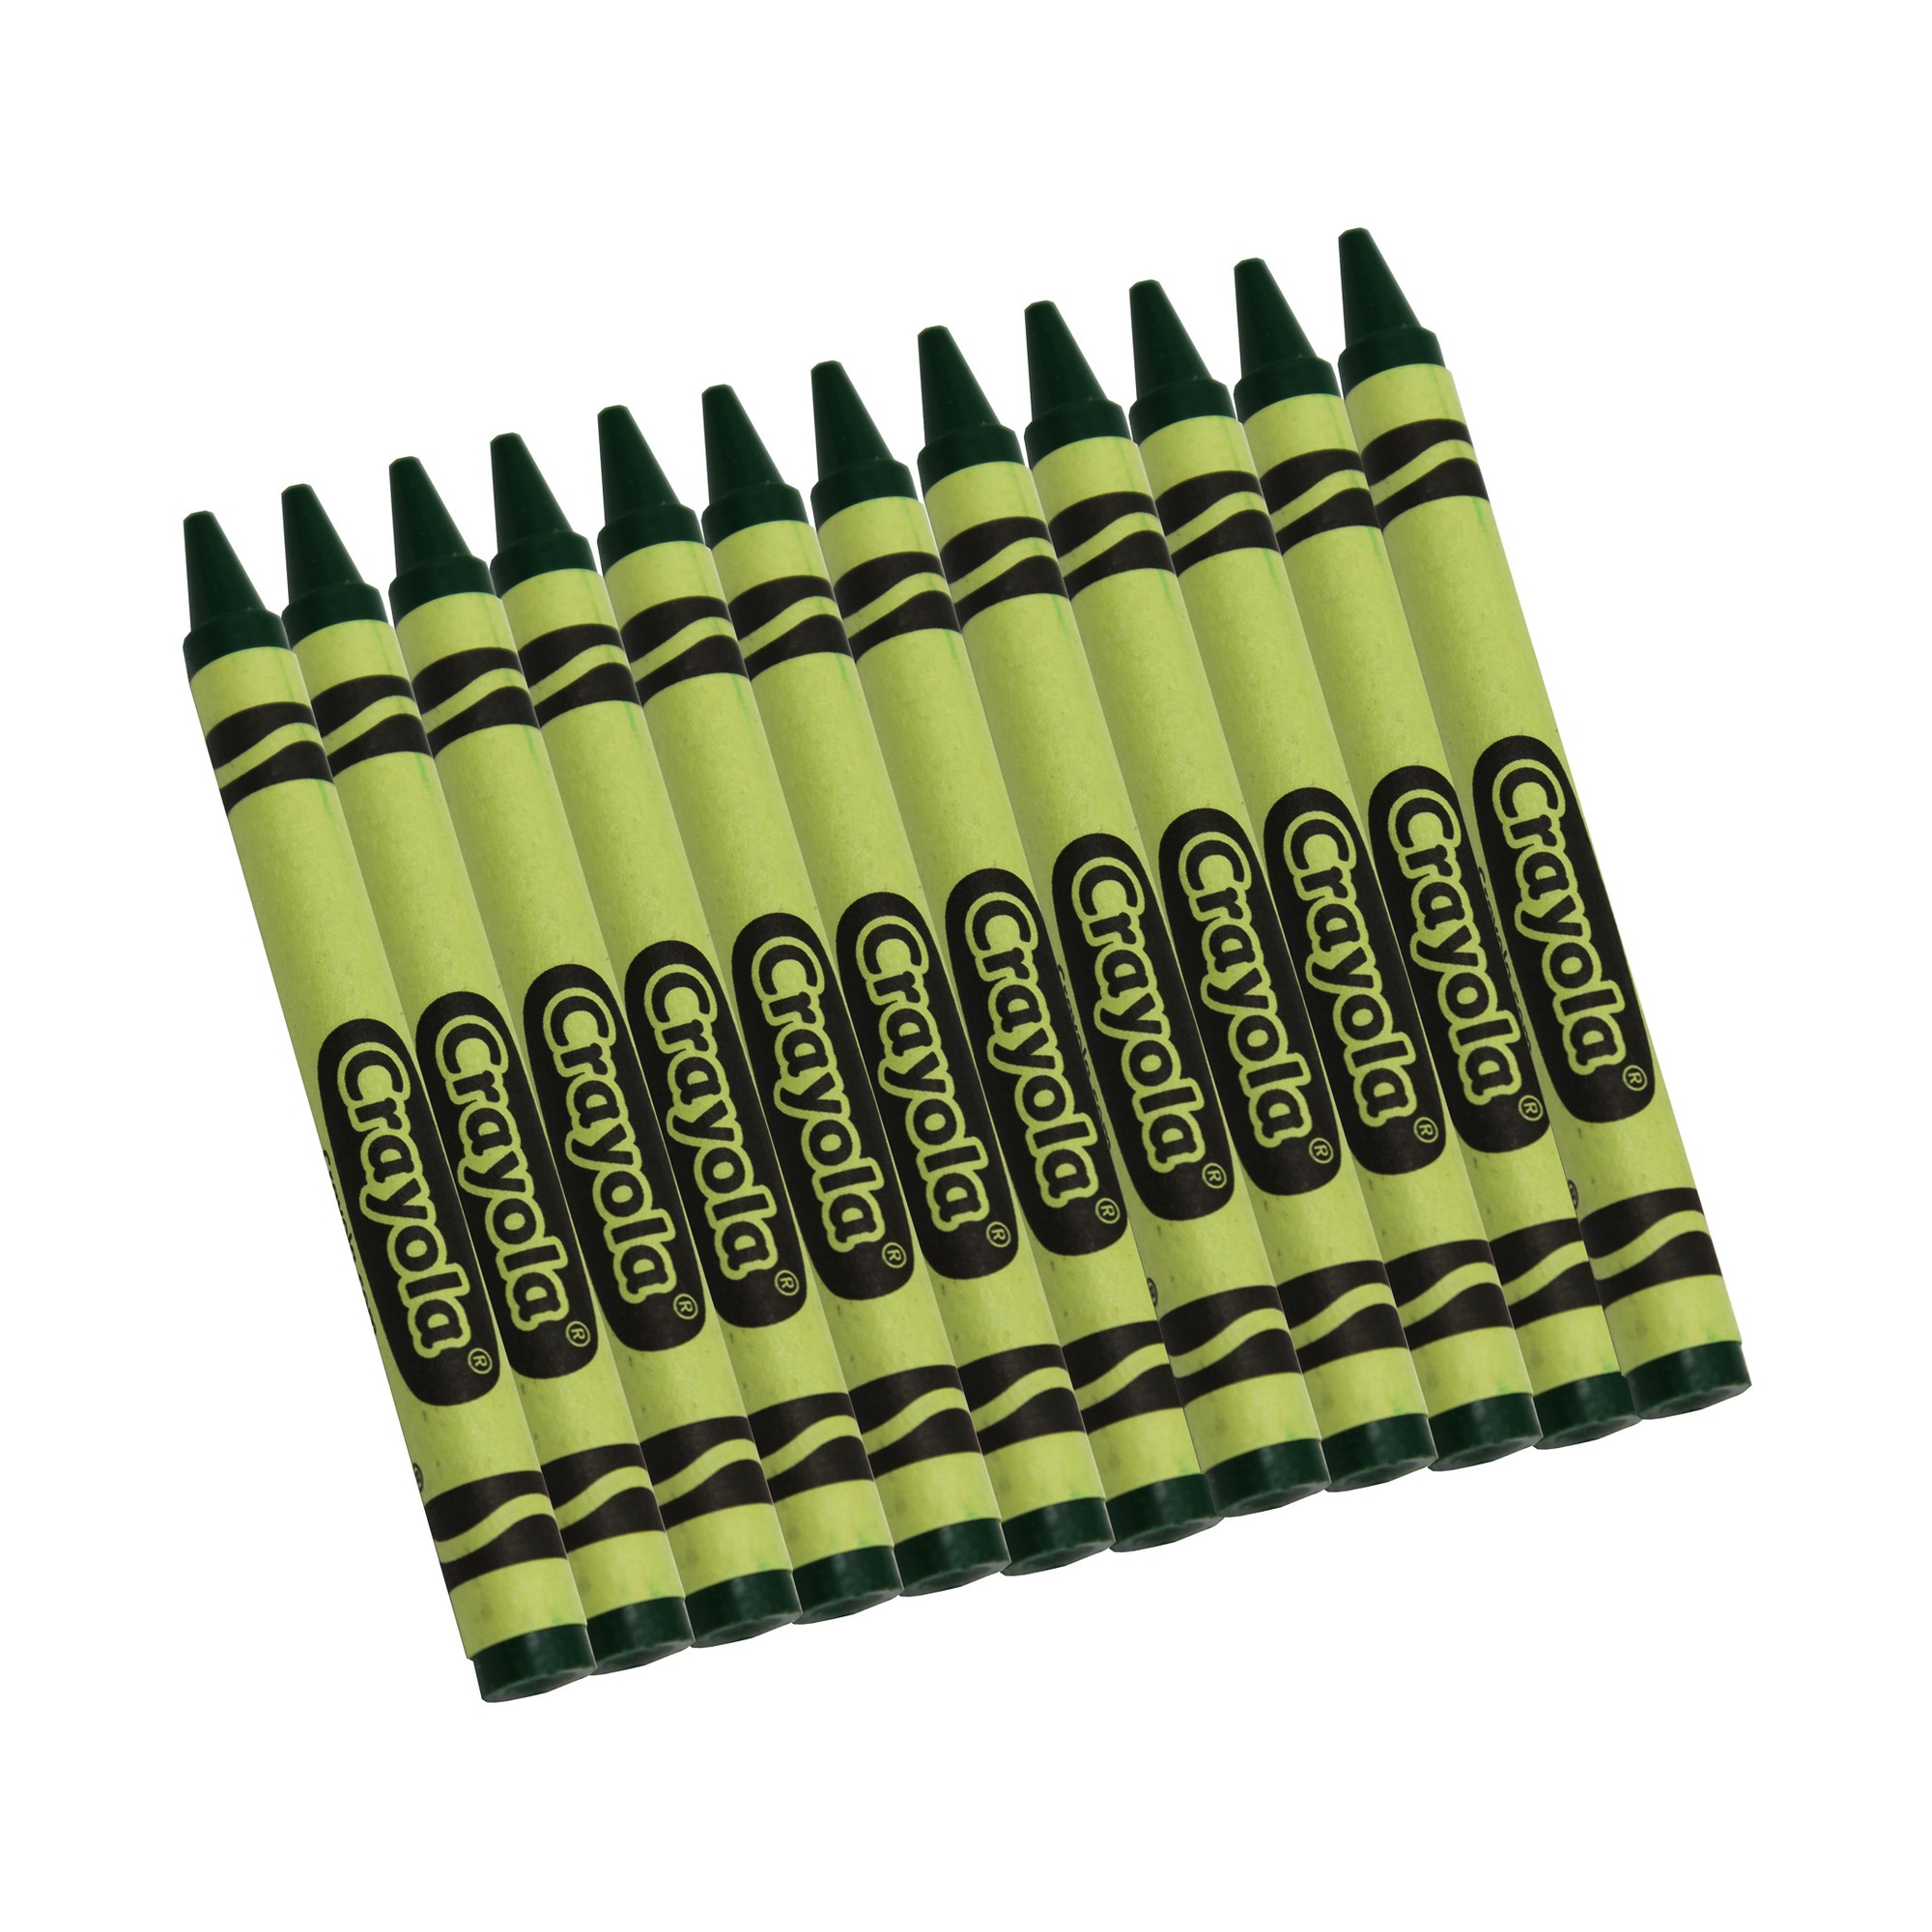 Bulk Crayons, Green, Regular Size, 12 Count